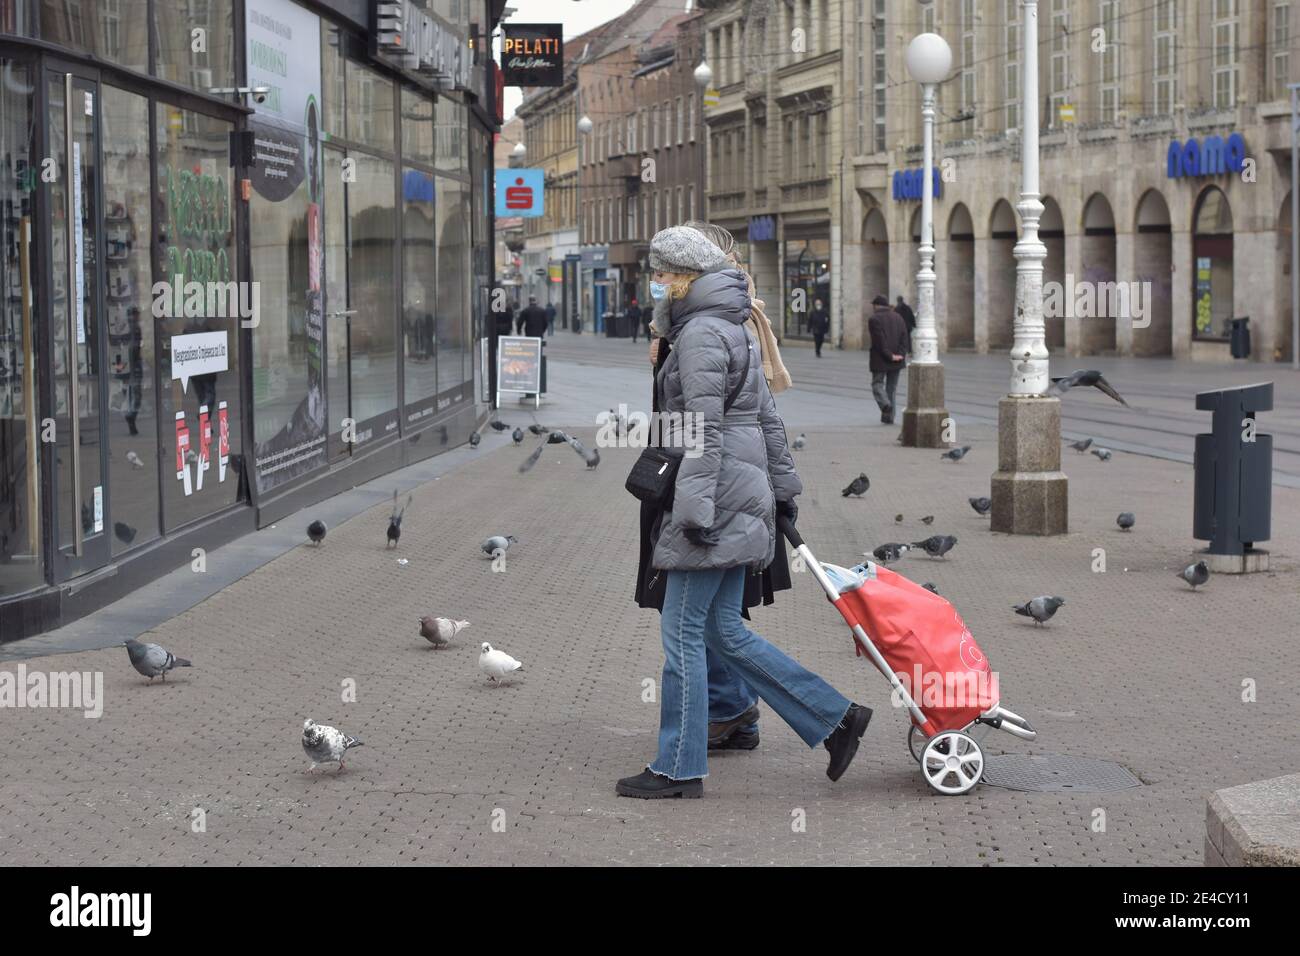 Street scene from Zagreb, Croatia Stock Photo